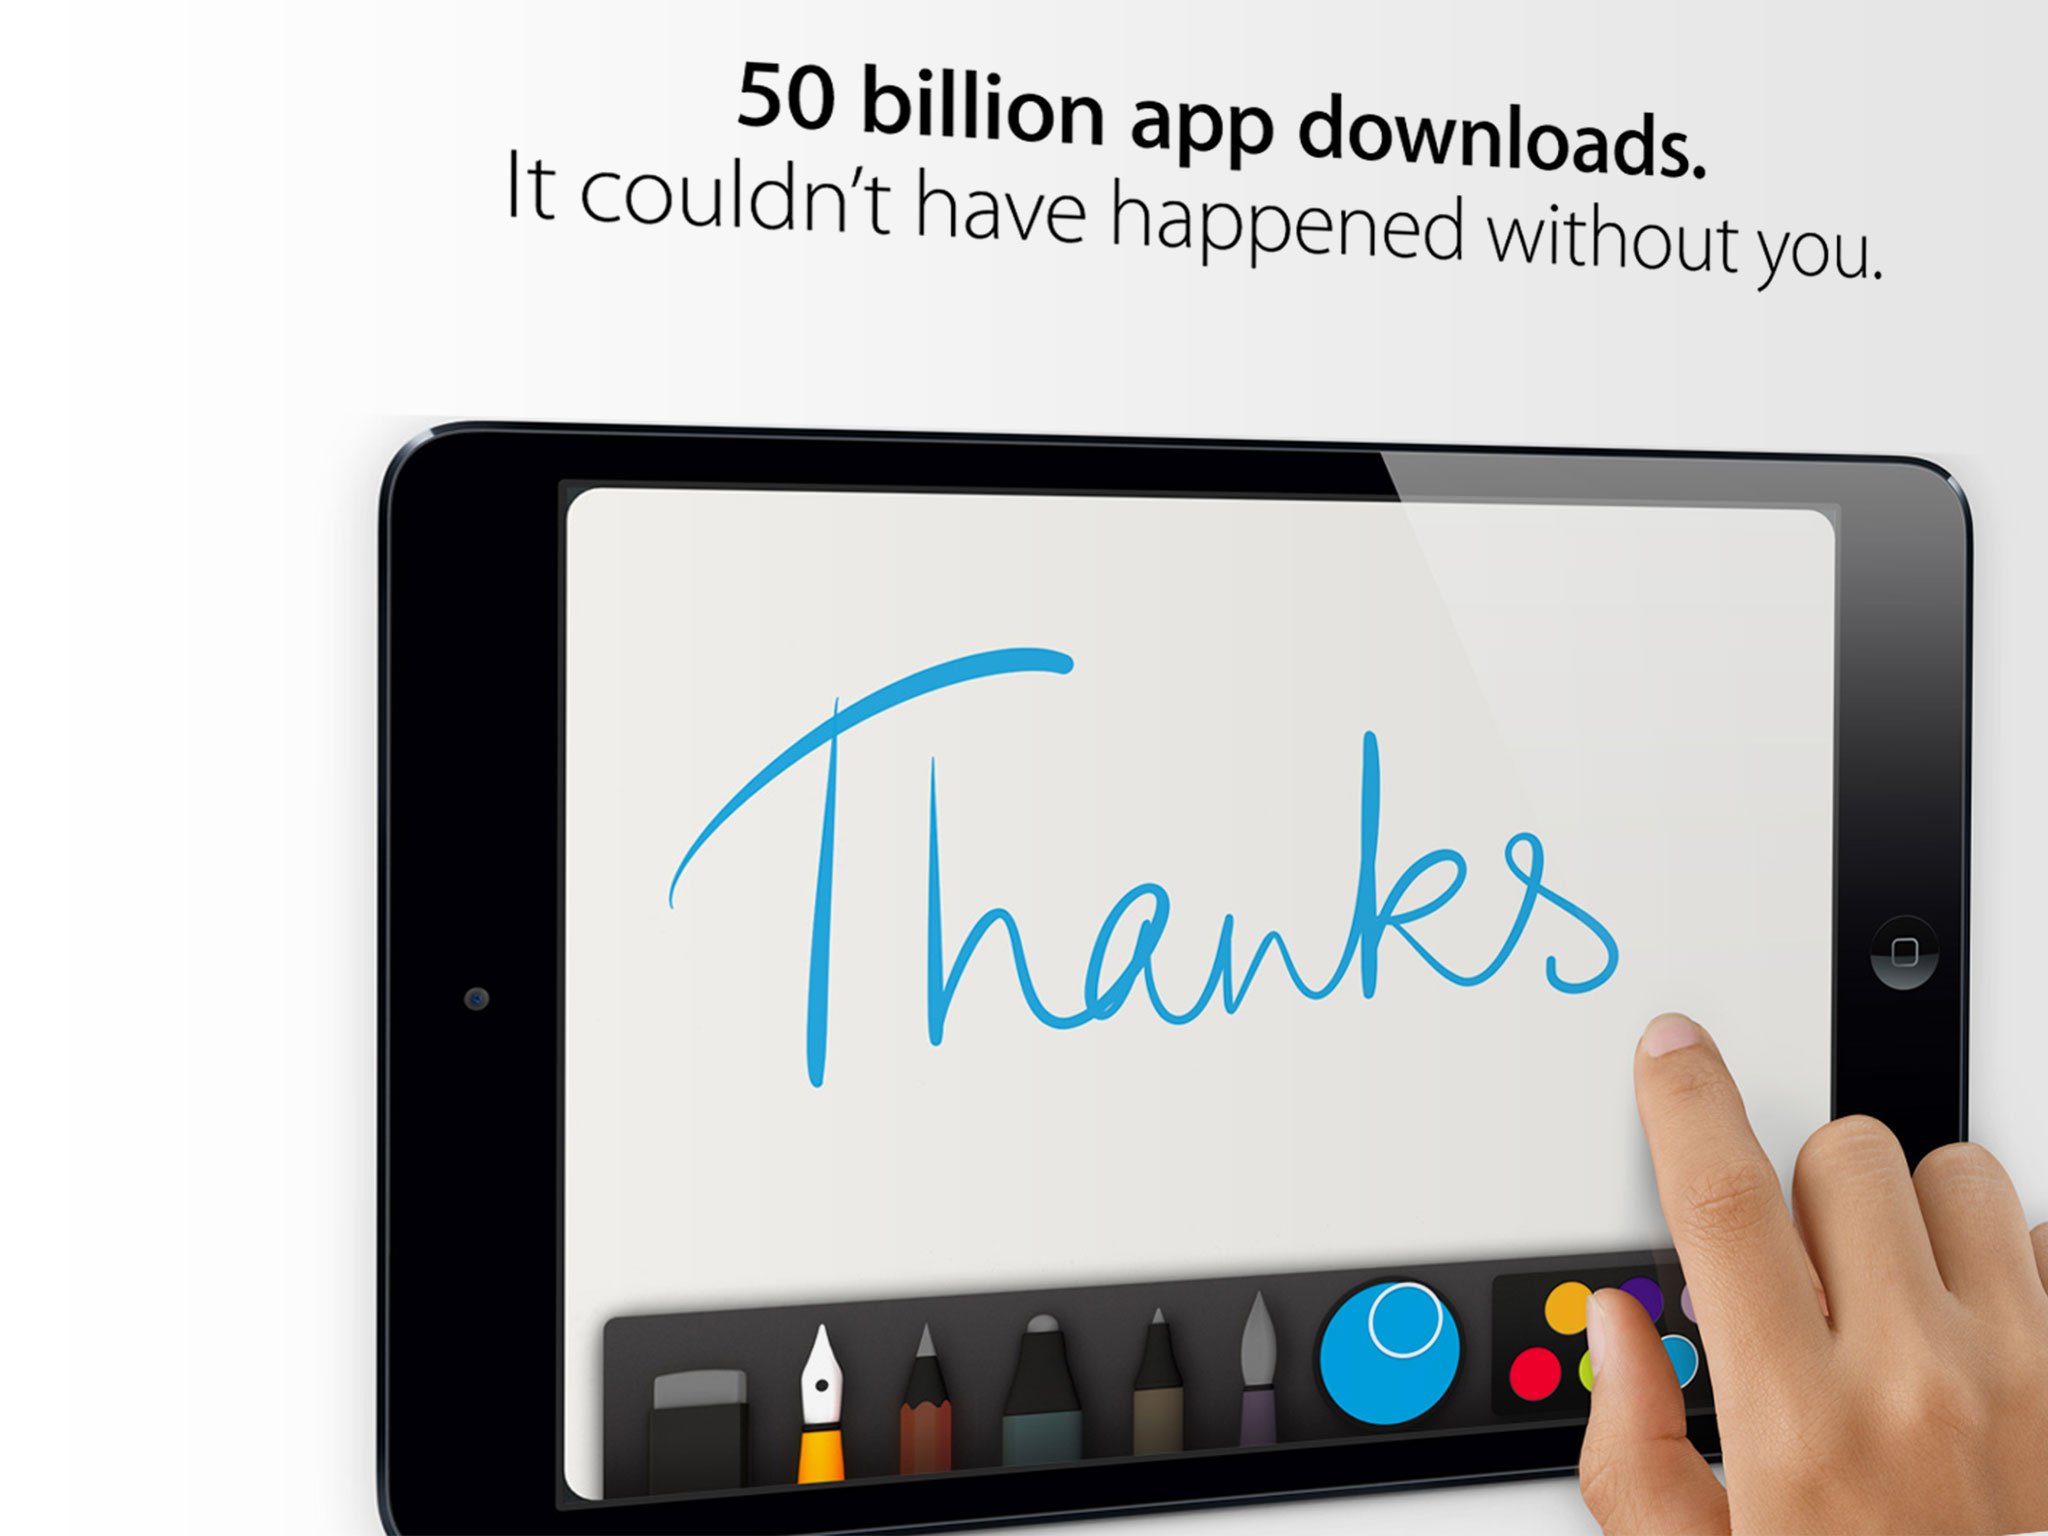 Apple announces 50 billion app downloads. For real.